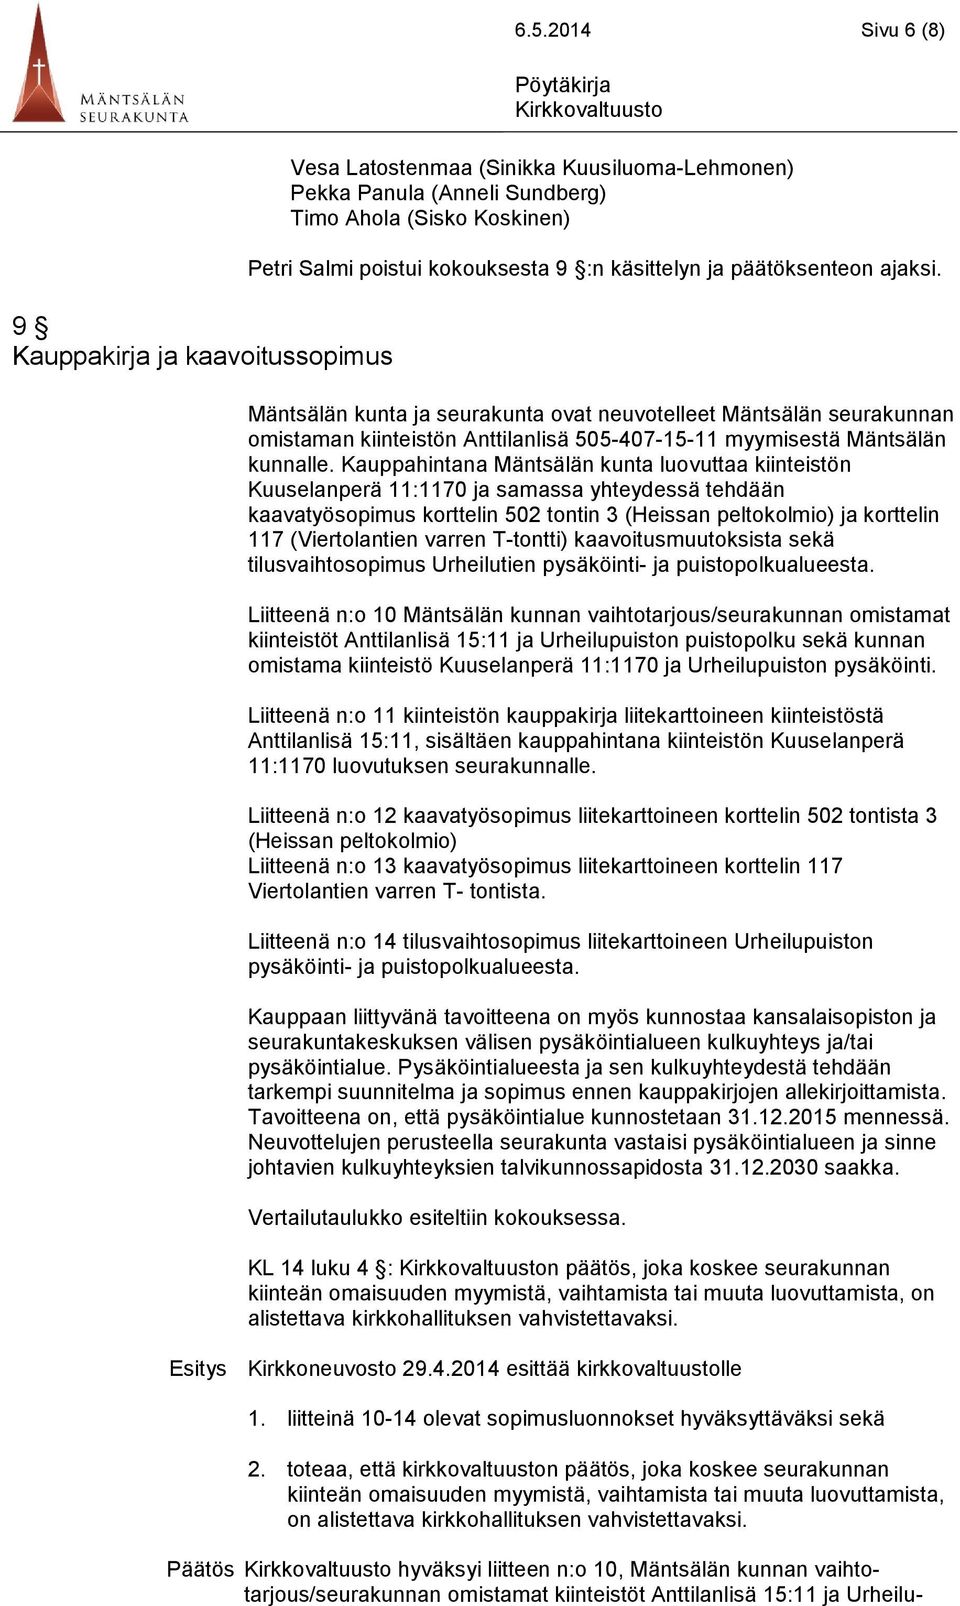 Mäntsälän kunta ja seurakunta ovat neuvotelleet Mäntsälän seurakunnan omistaman kiinteistön Anttilanlisä 505-407-15-11 myymisestä Mäntsälän kunnalle.